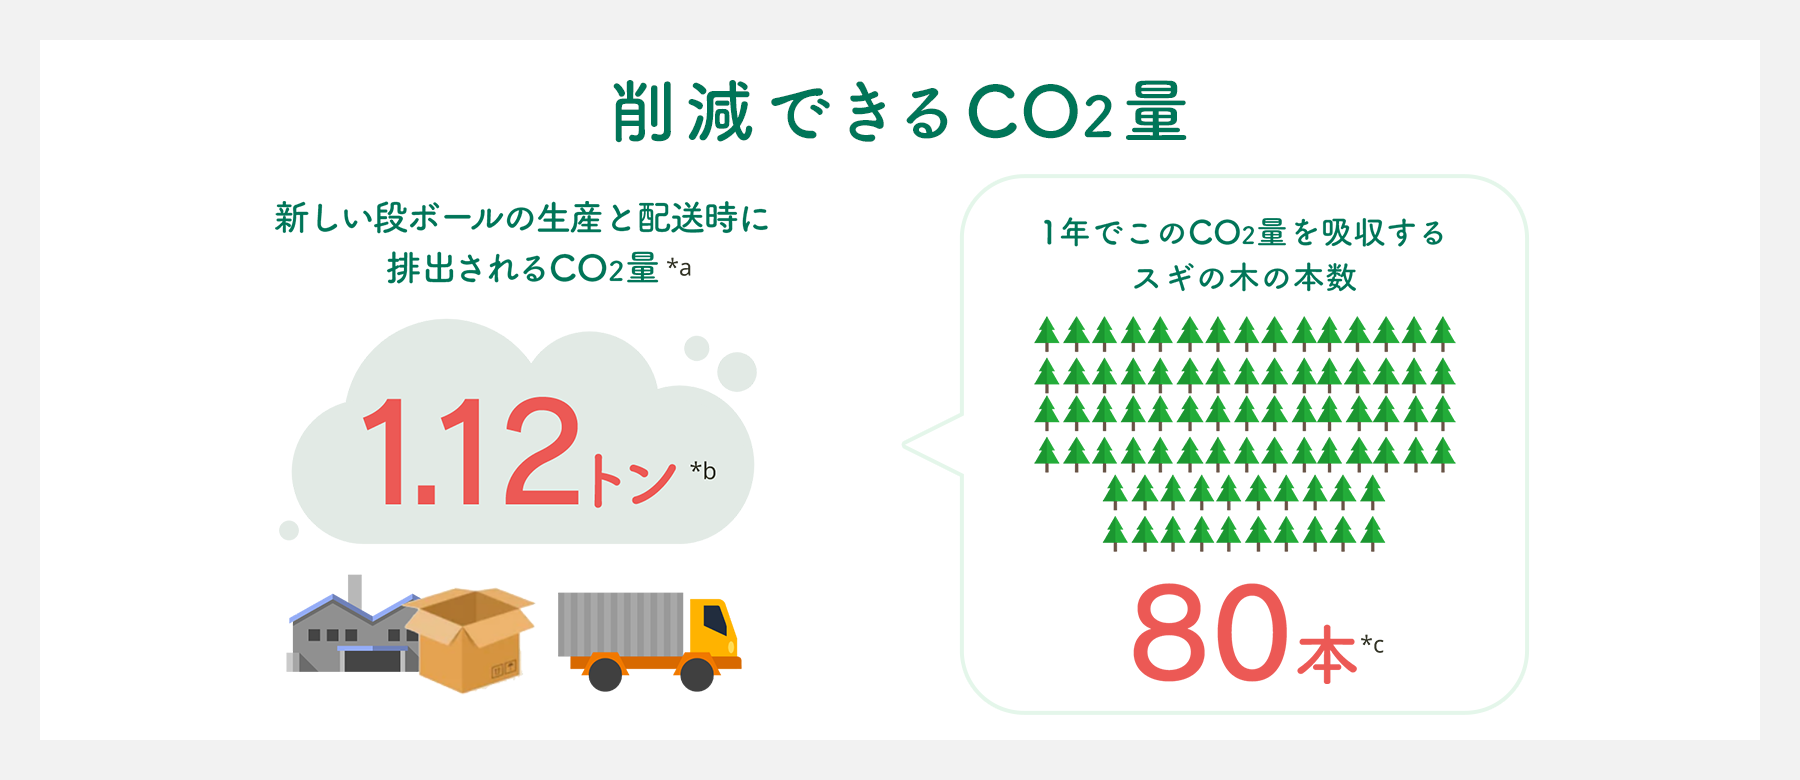 日本最大級のリコマースサービスのブランディア、宅配買取のCO2削減する「SDGs強化月間2021」を開催のサブ画像2